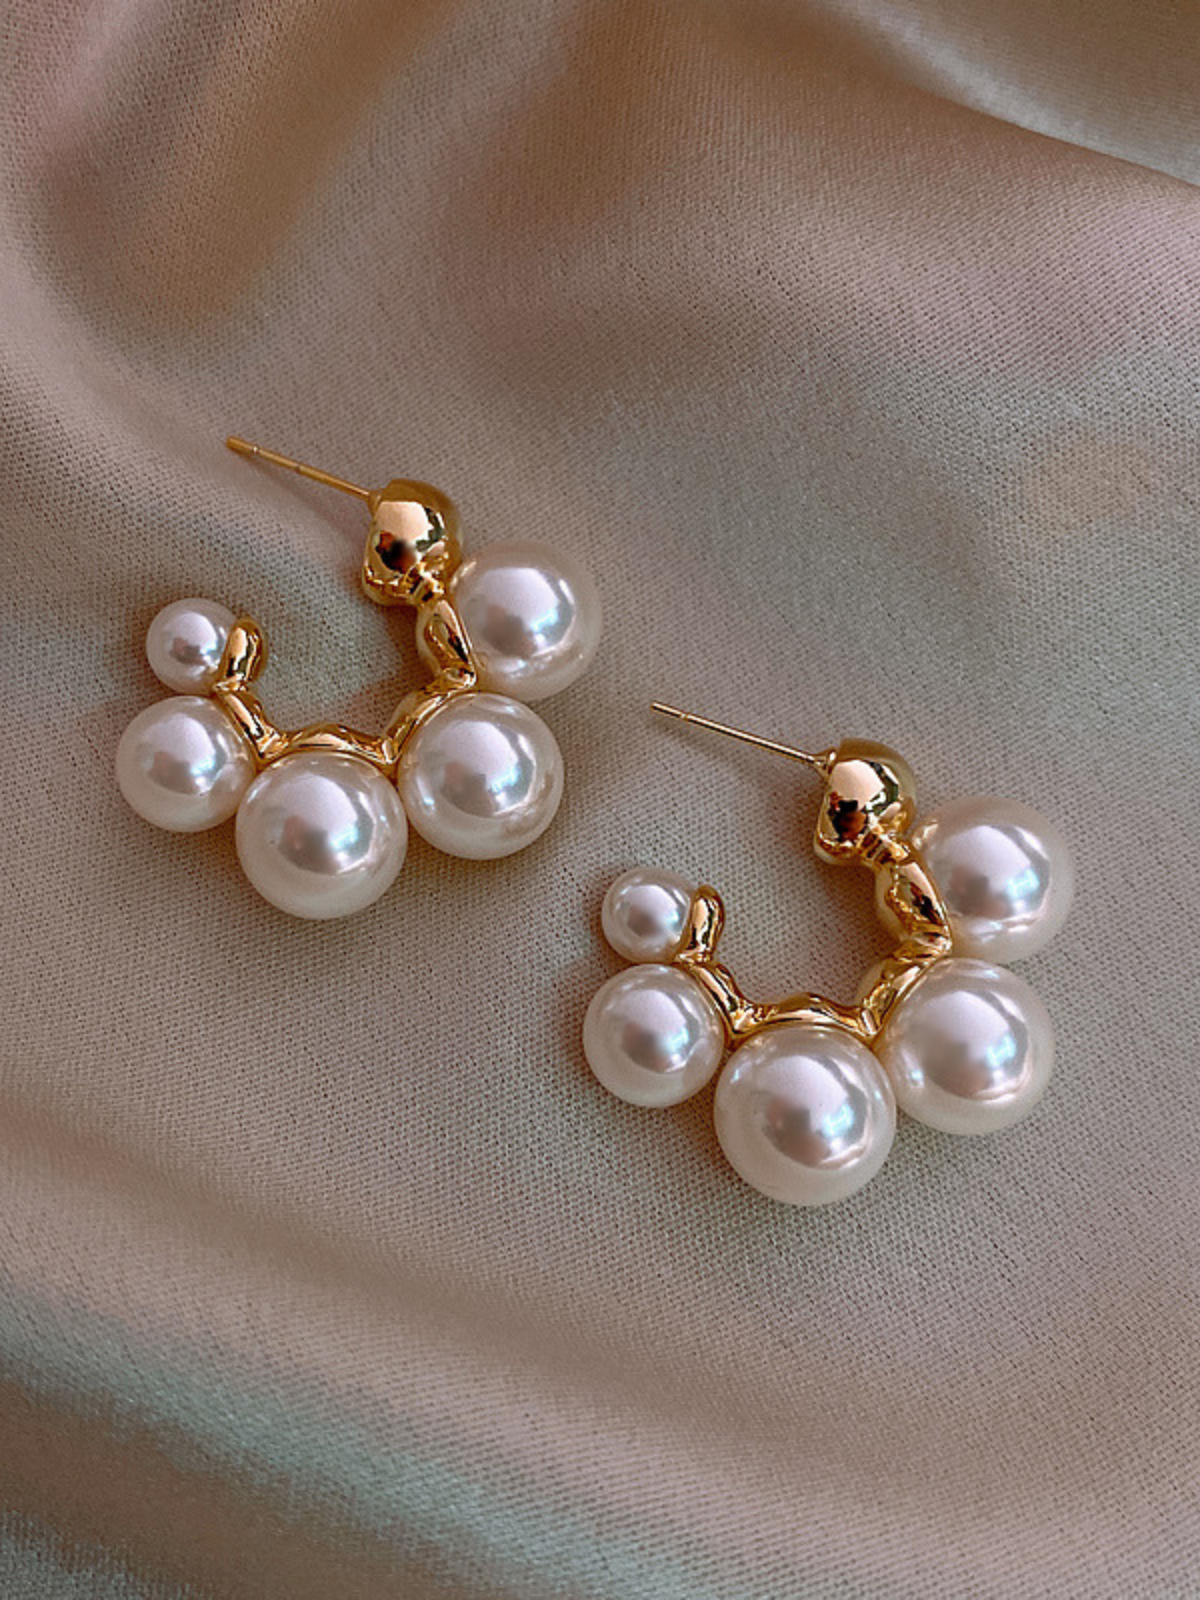 Little Girls Formal Accessories | Shiny Pearl Golden Earrings